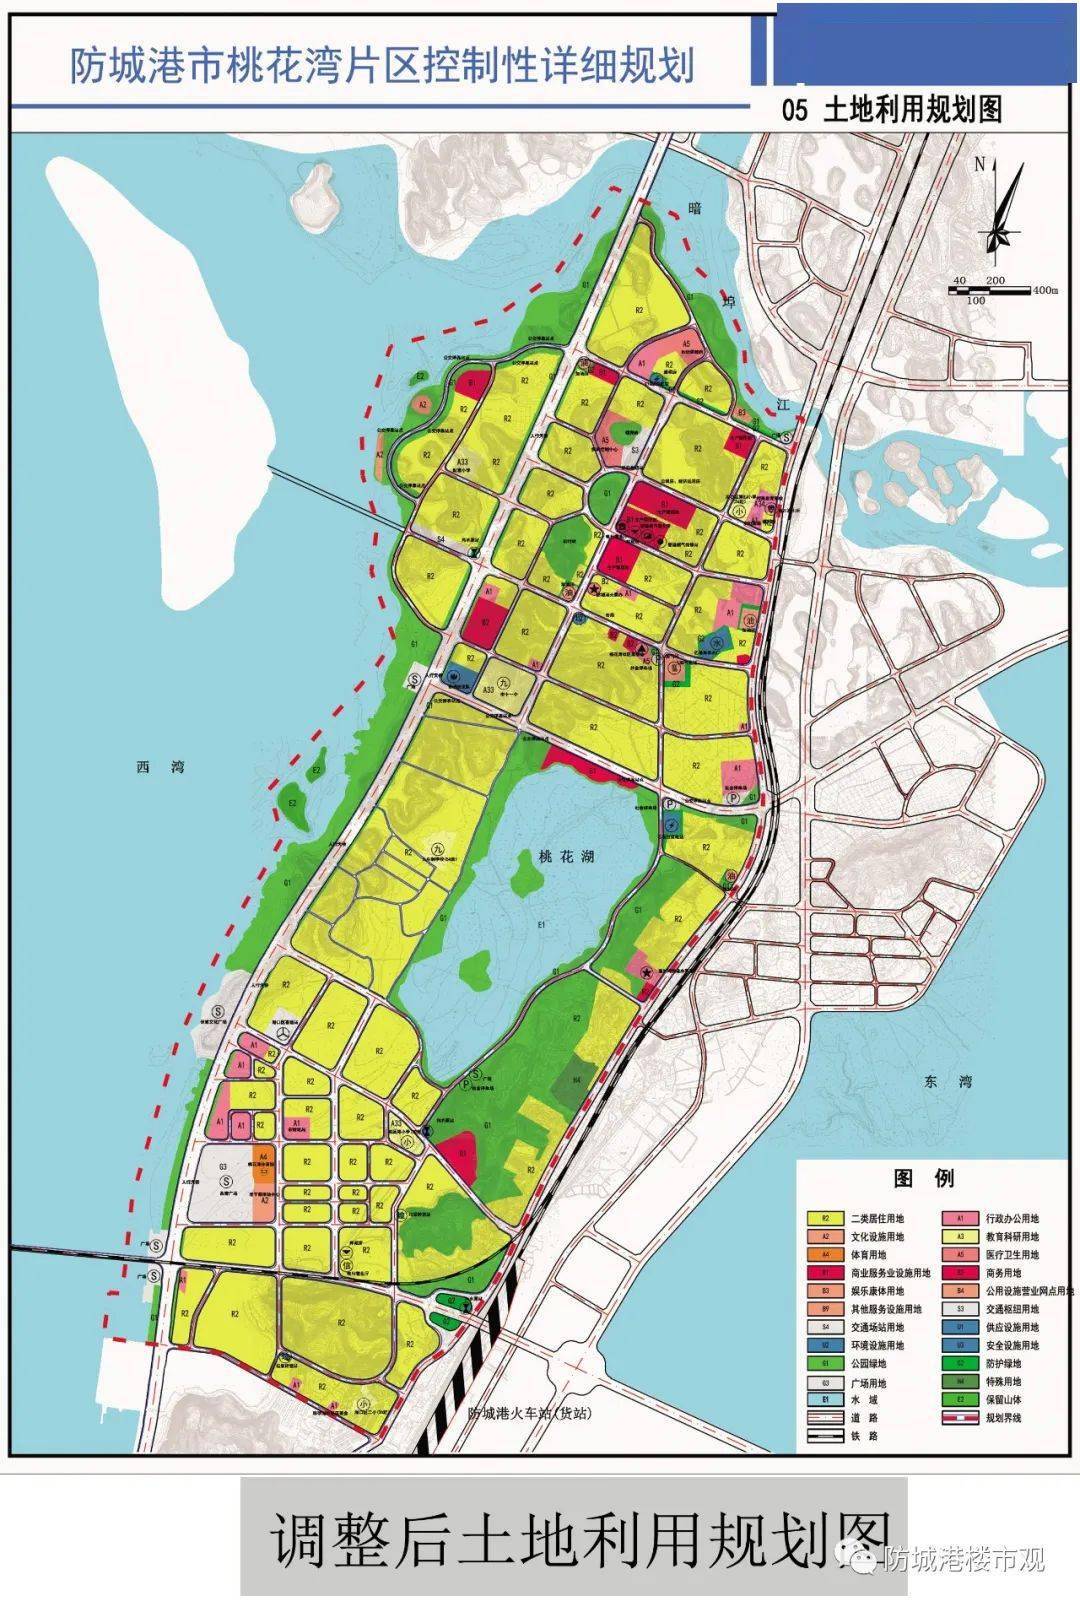 【收藏】防城港老百姓都在关注-2020年最新发布的城市新规划!